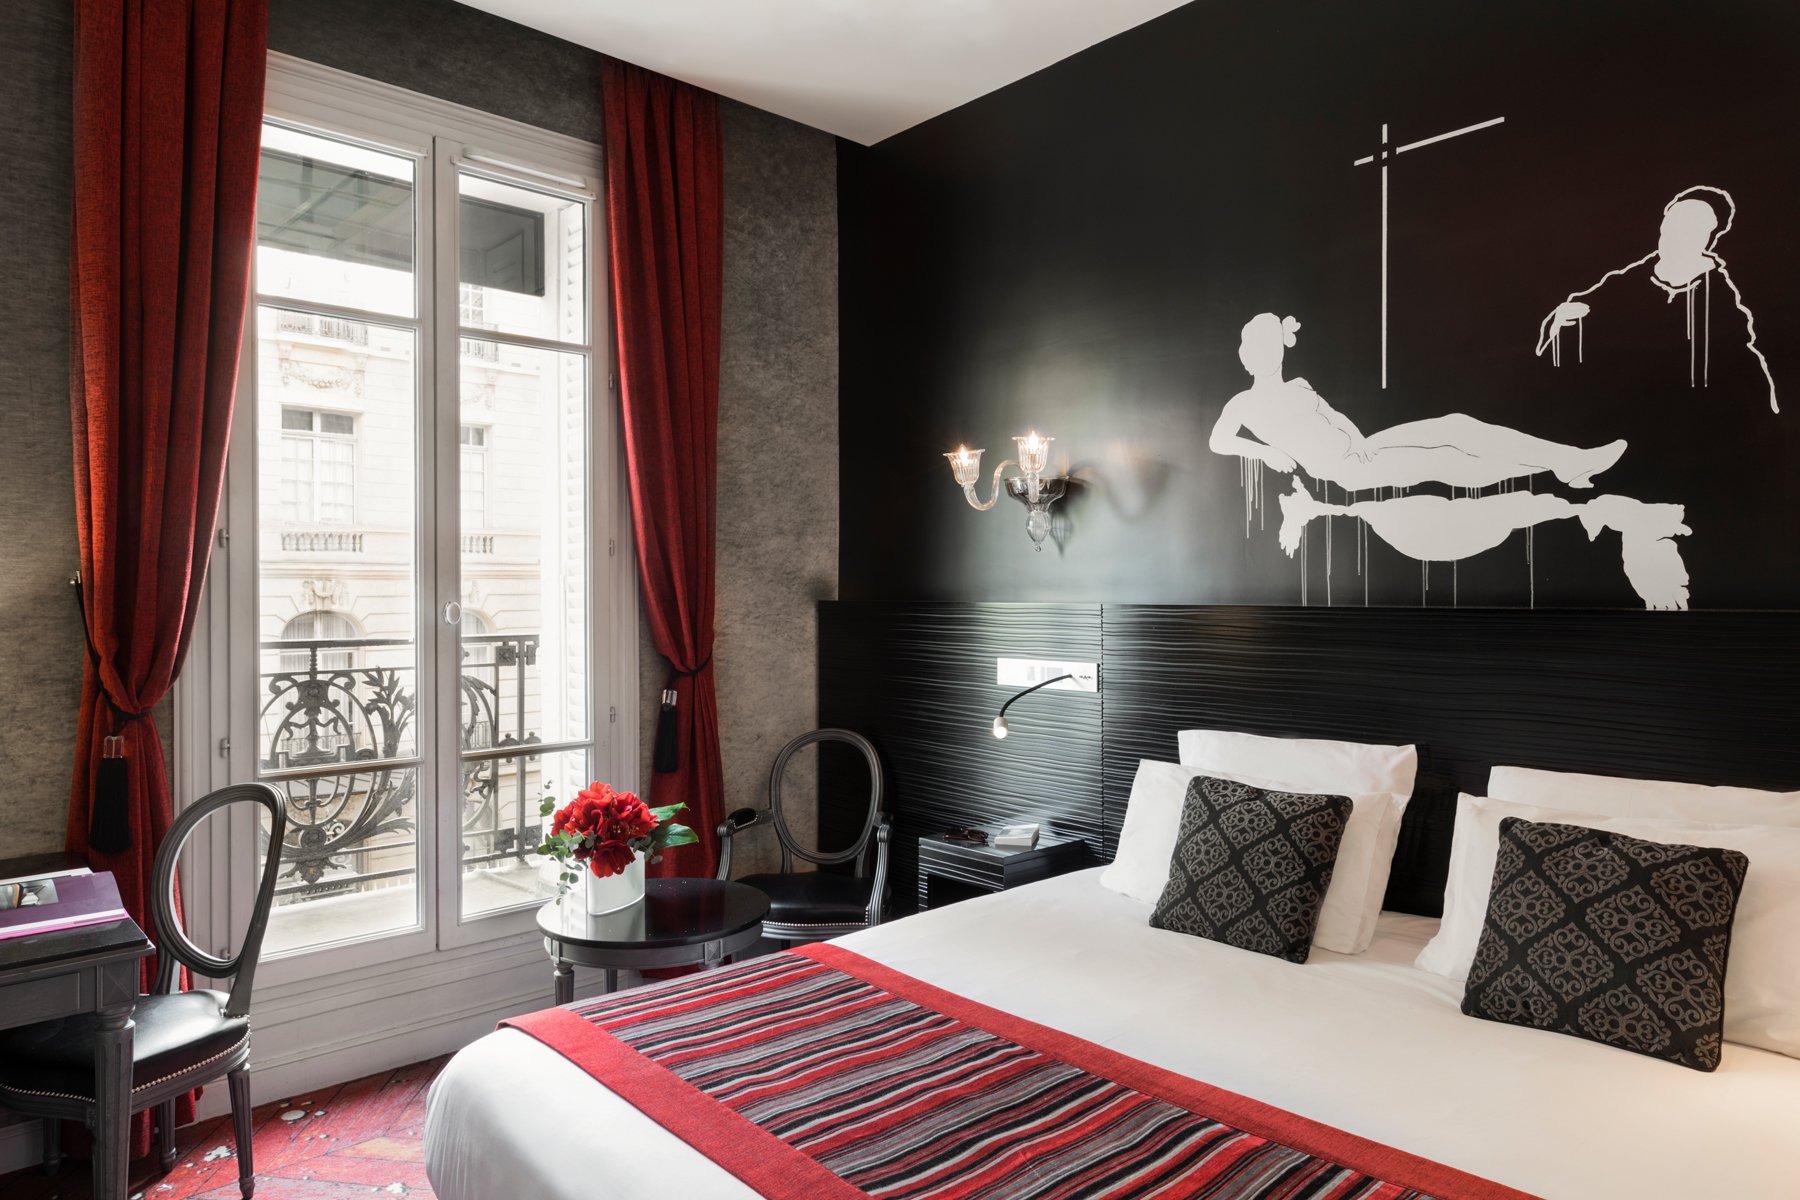 Maison Albar Hotels Le Champs-Elysées habitación superior